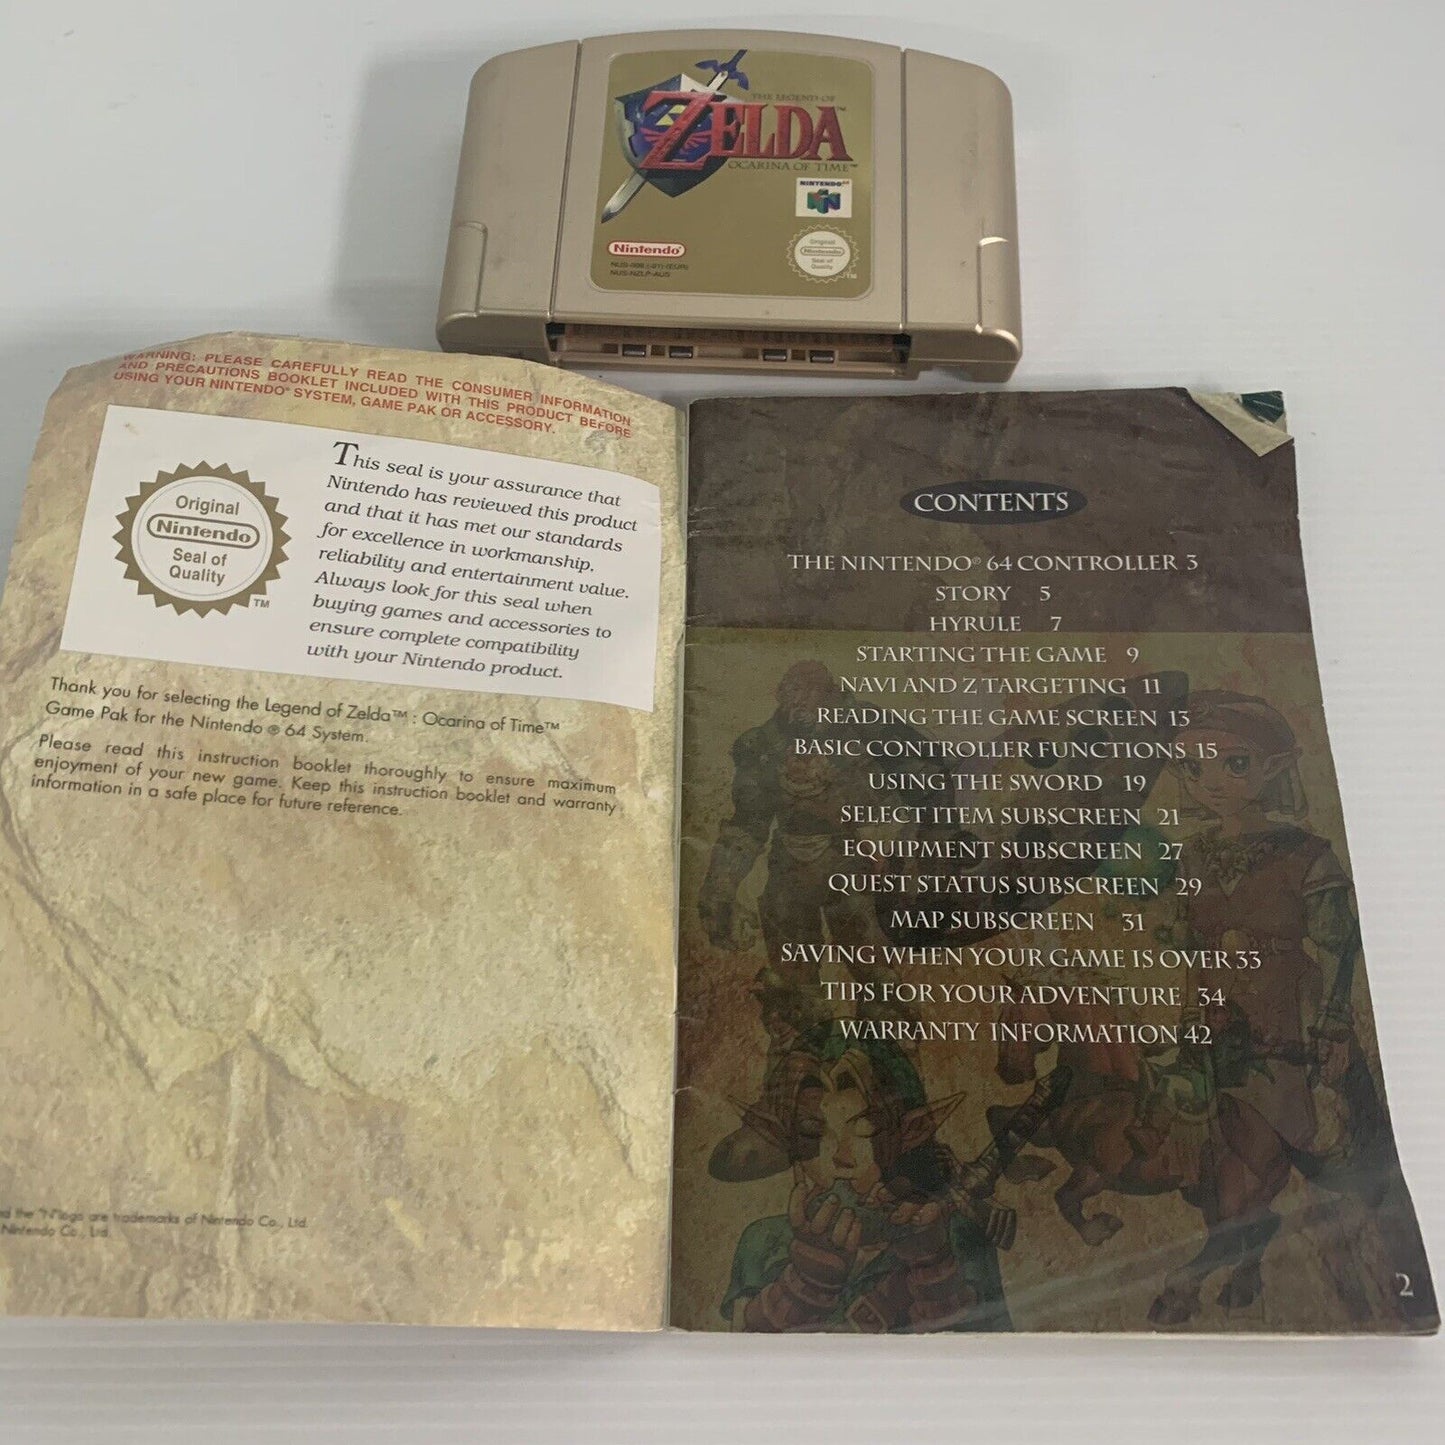 Legend Of Zelda Ocarina Of Time Game Nintendo 64 N64